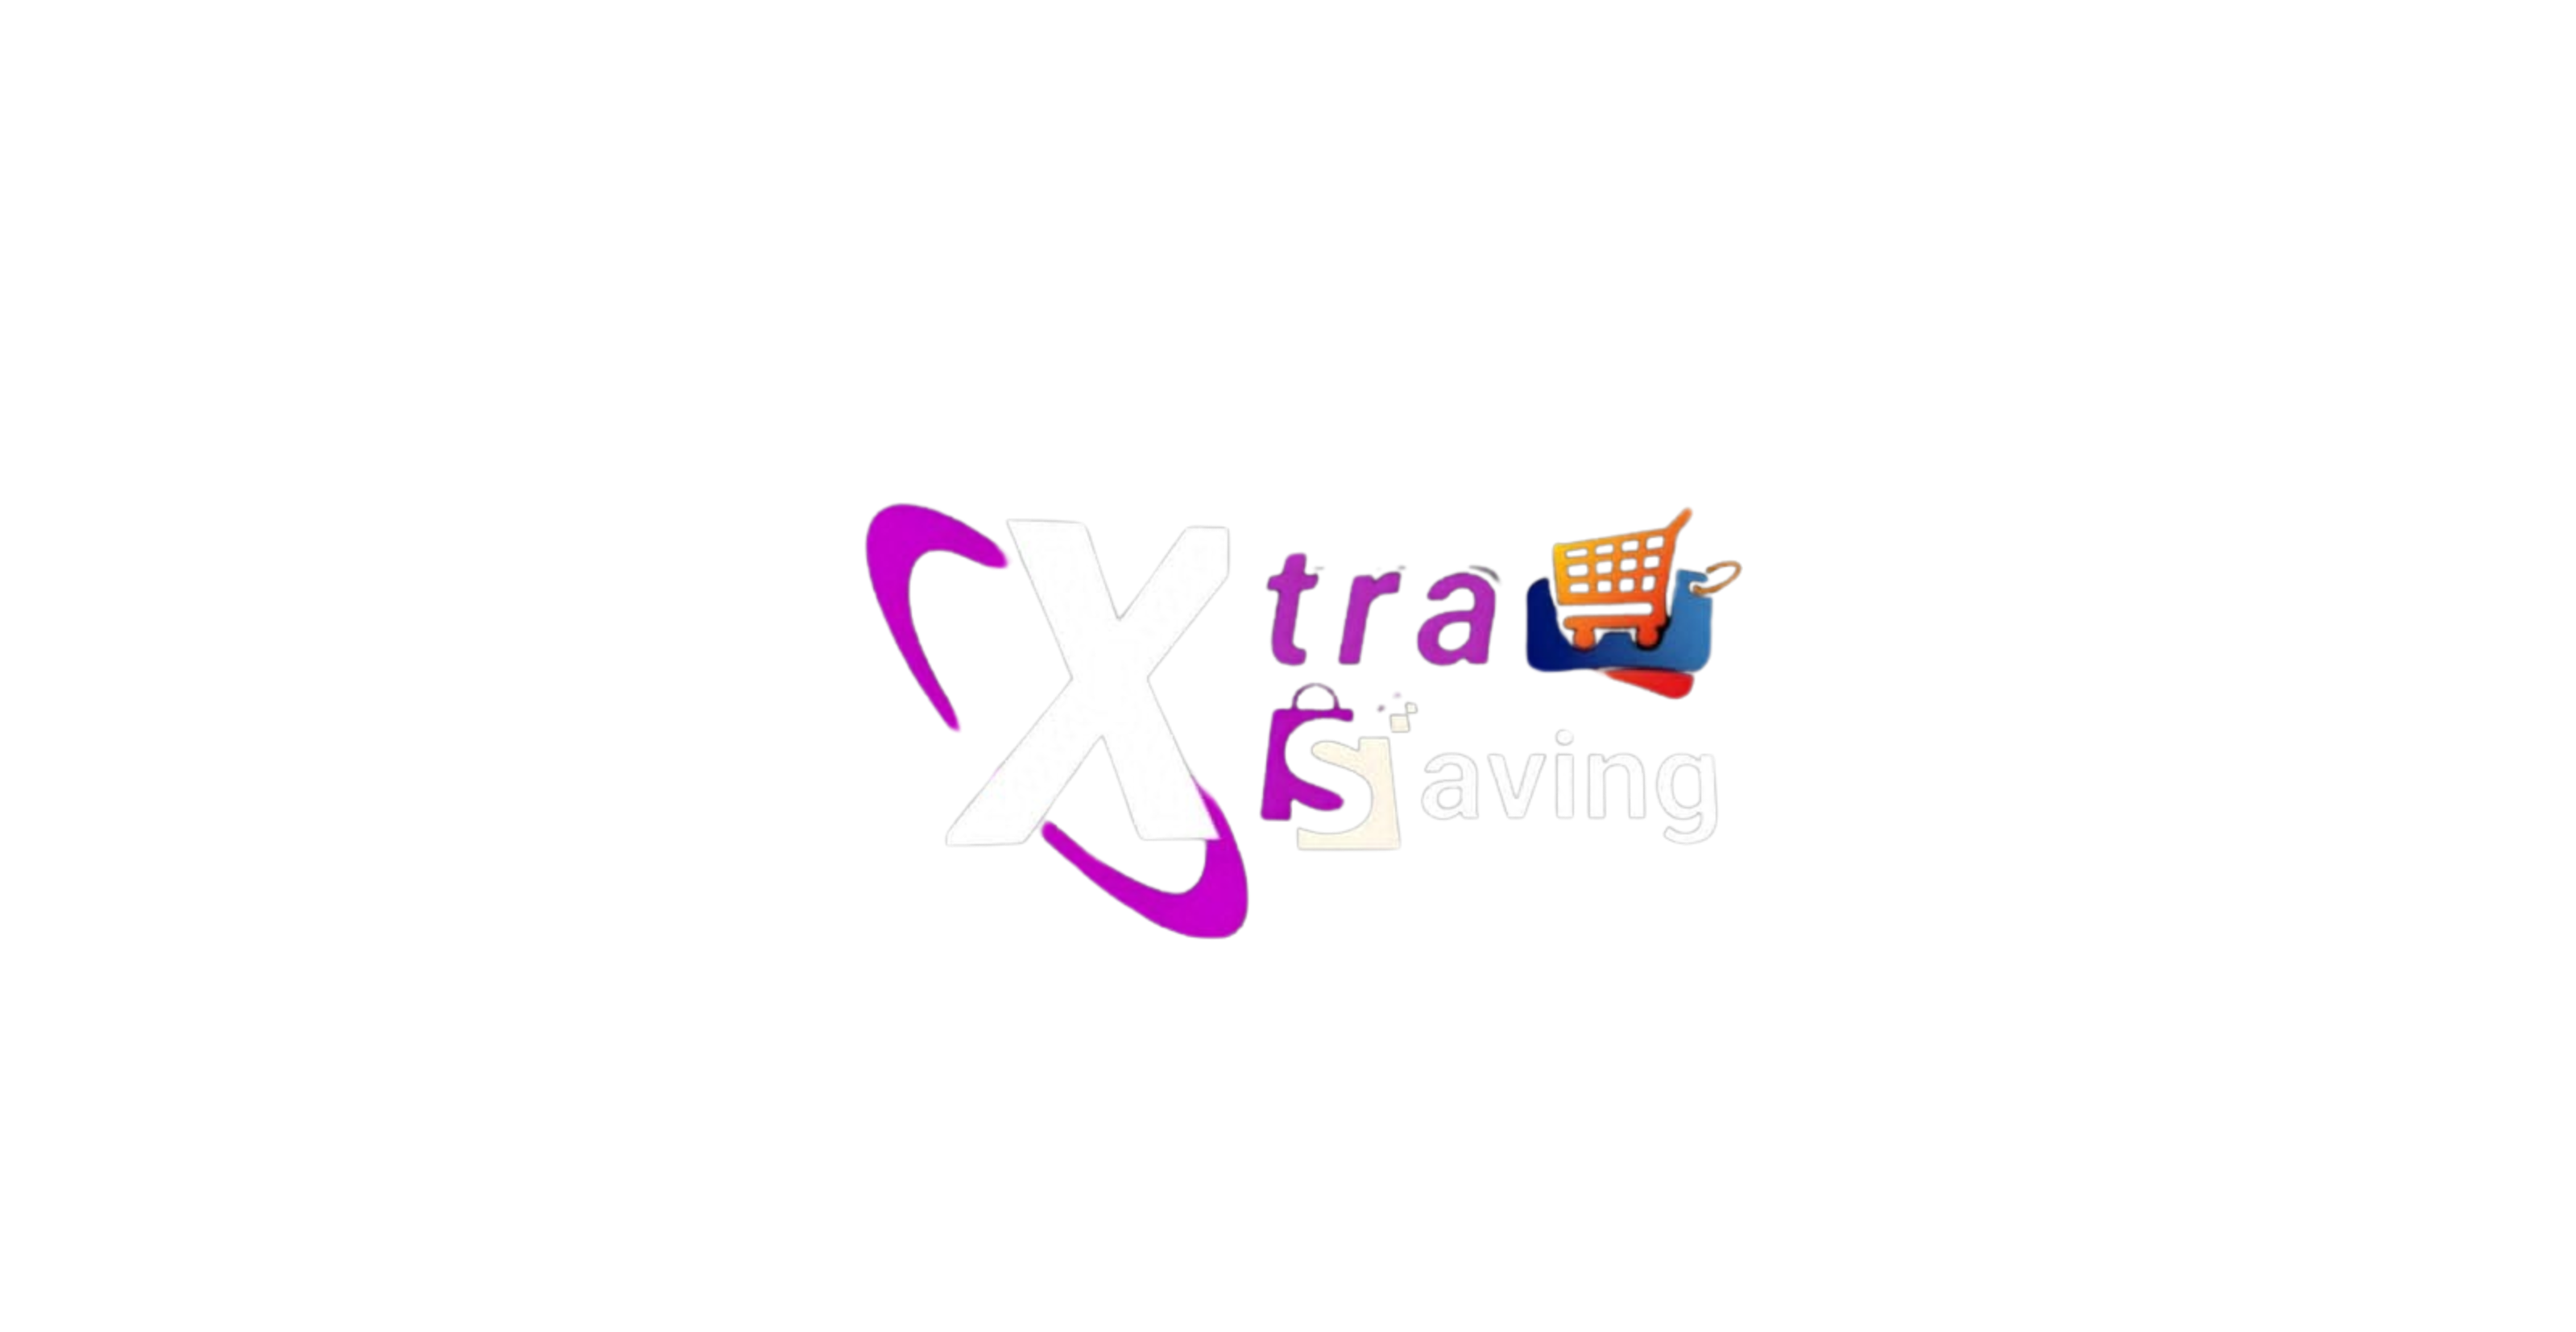 XtraSaving